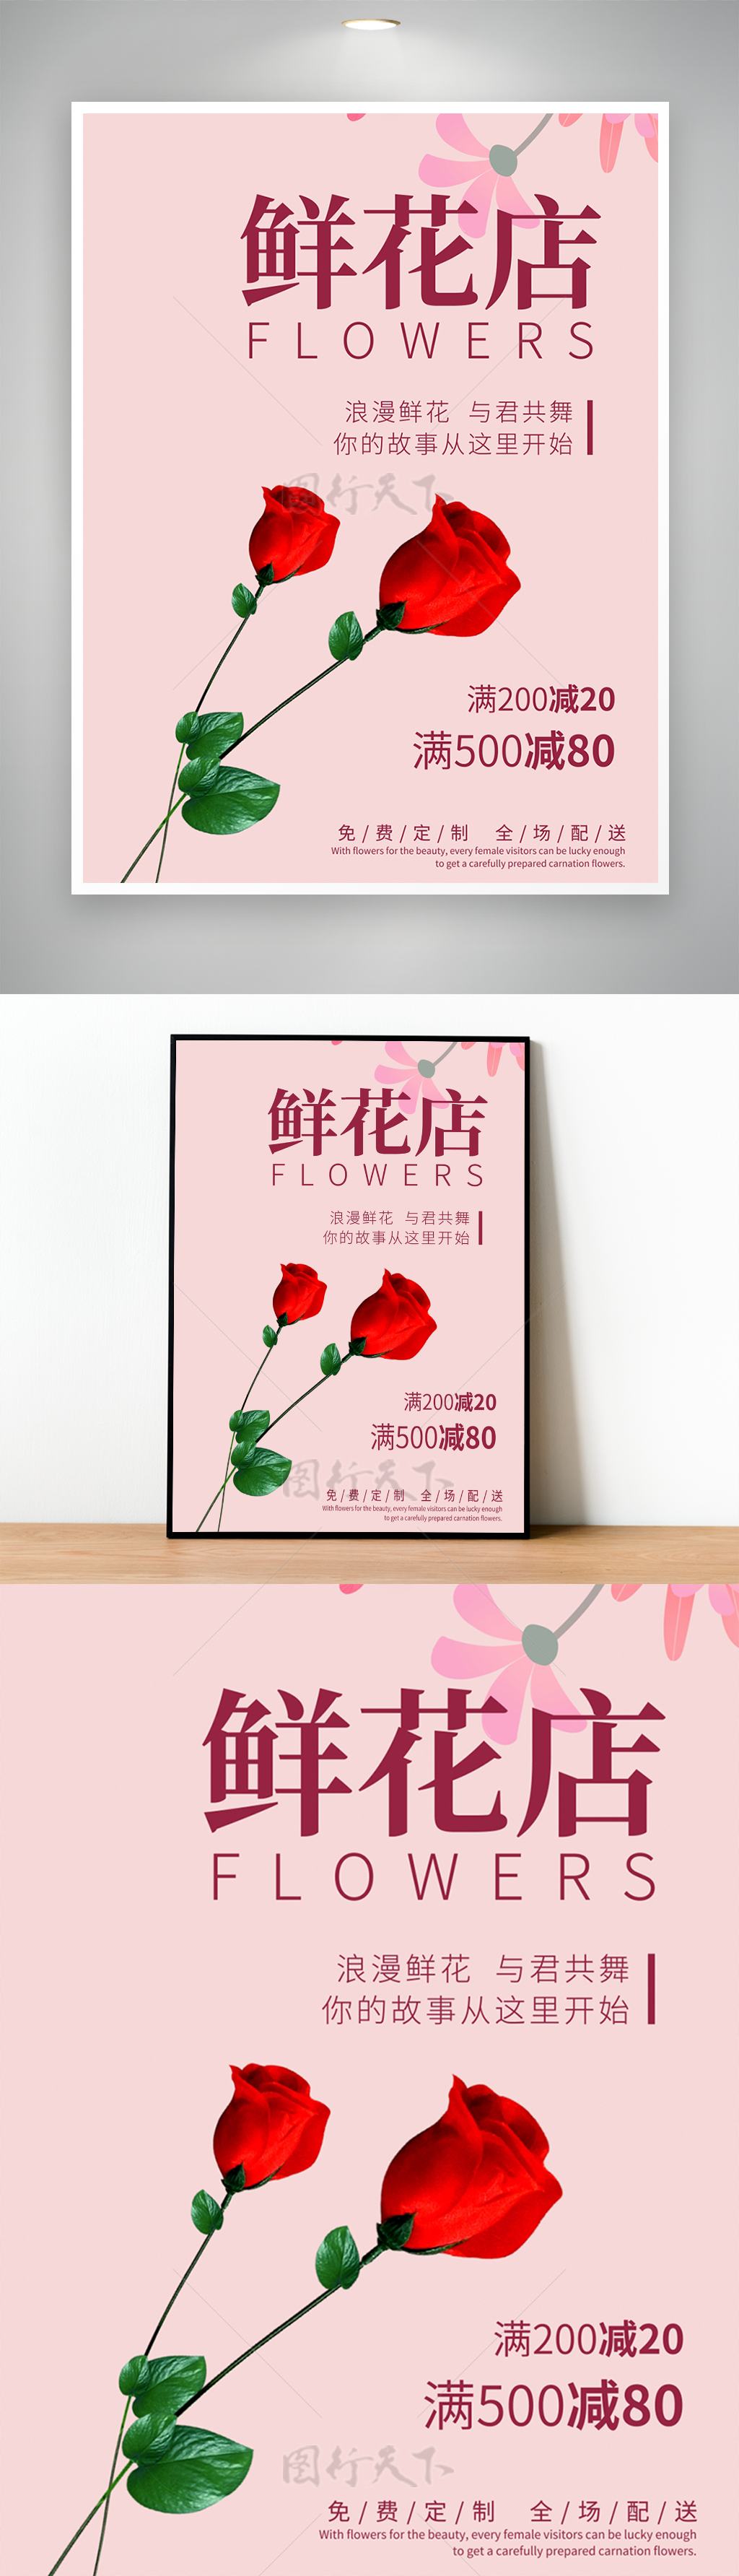 情人节鲜花店宣传主题海报